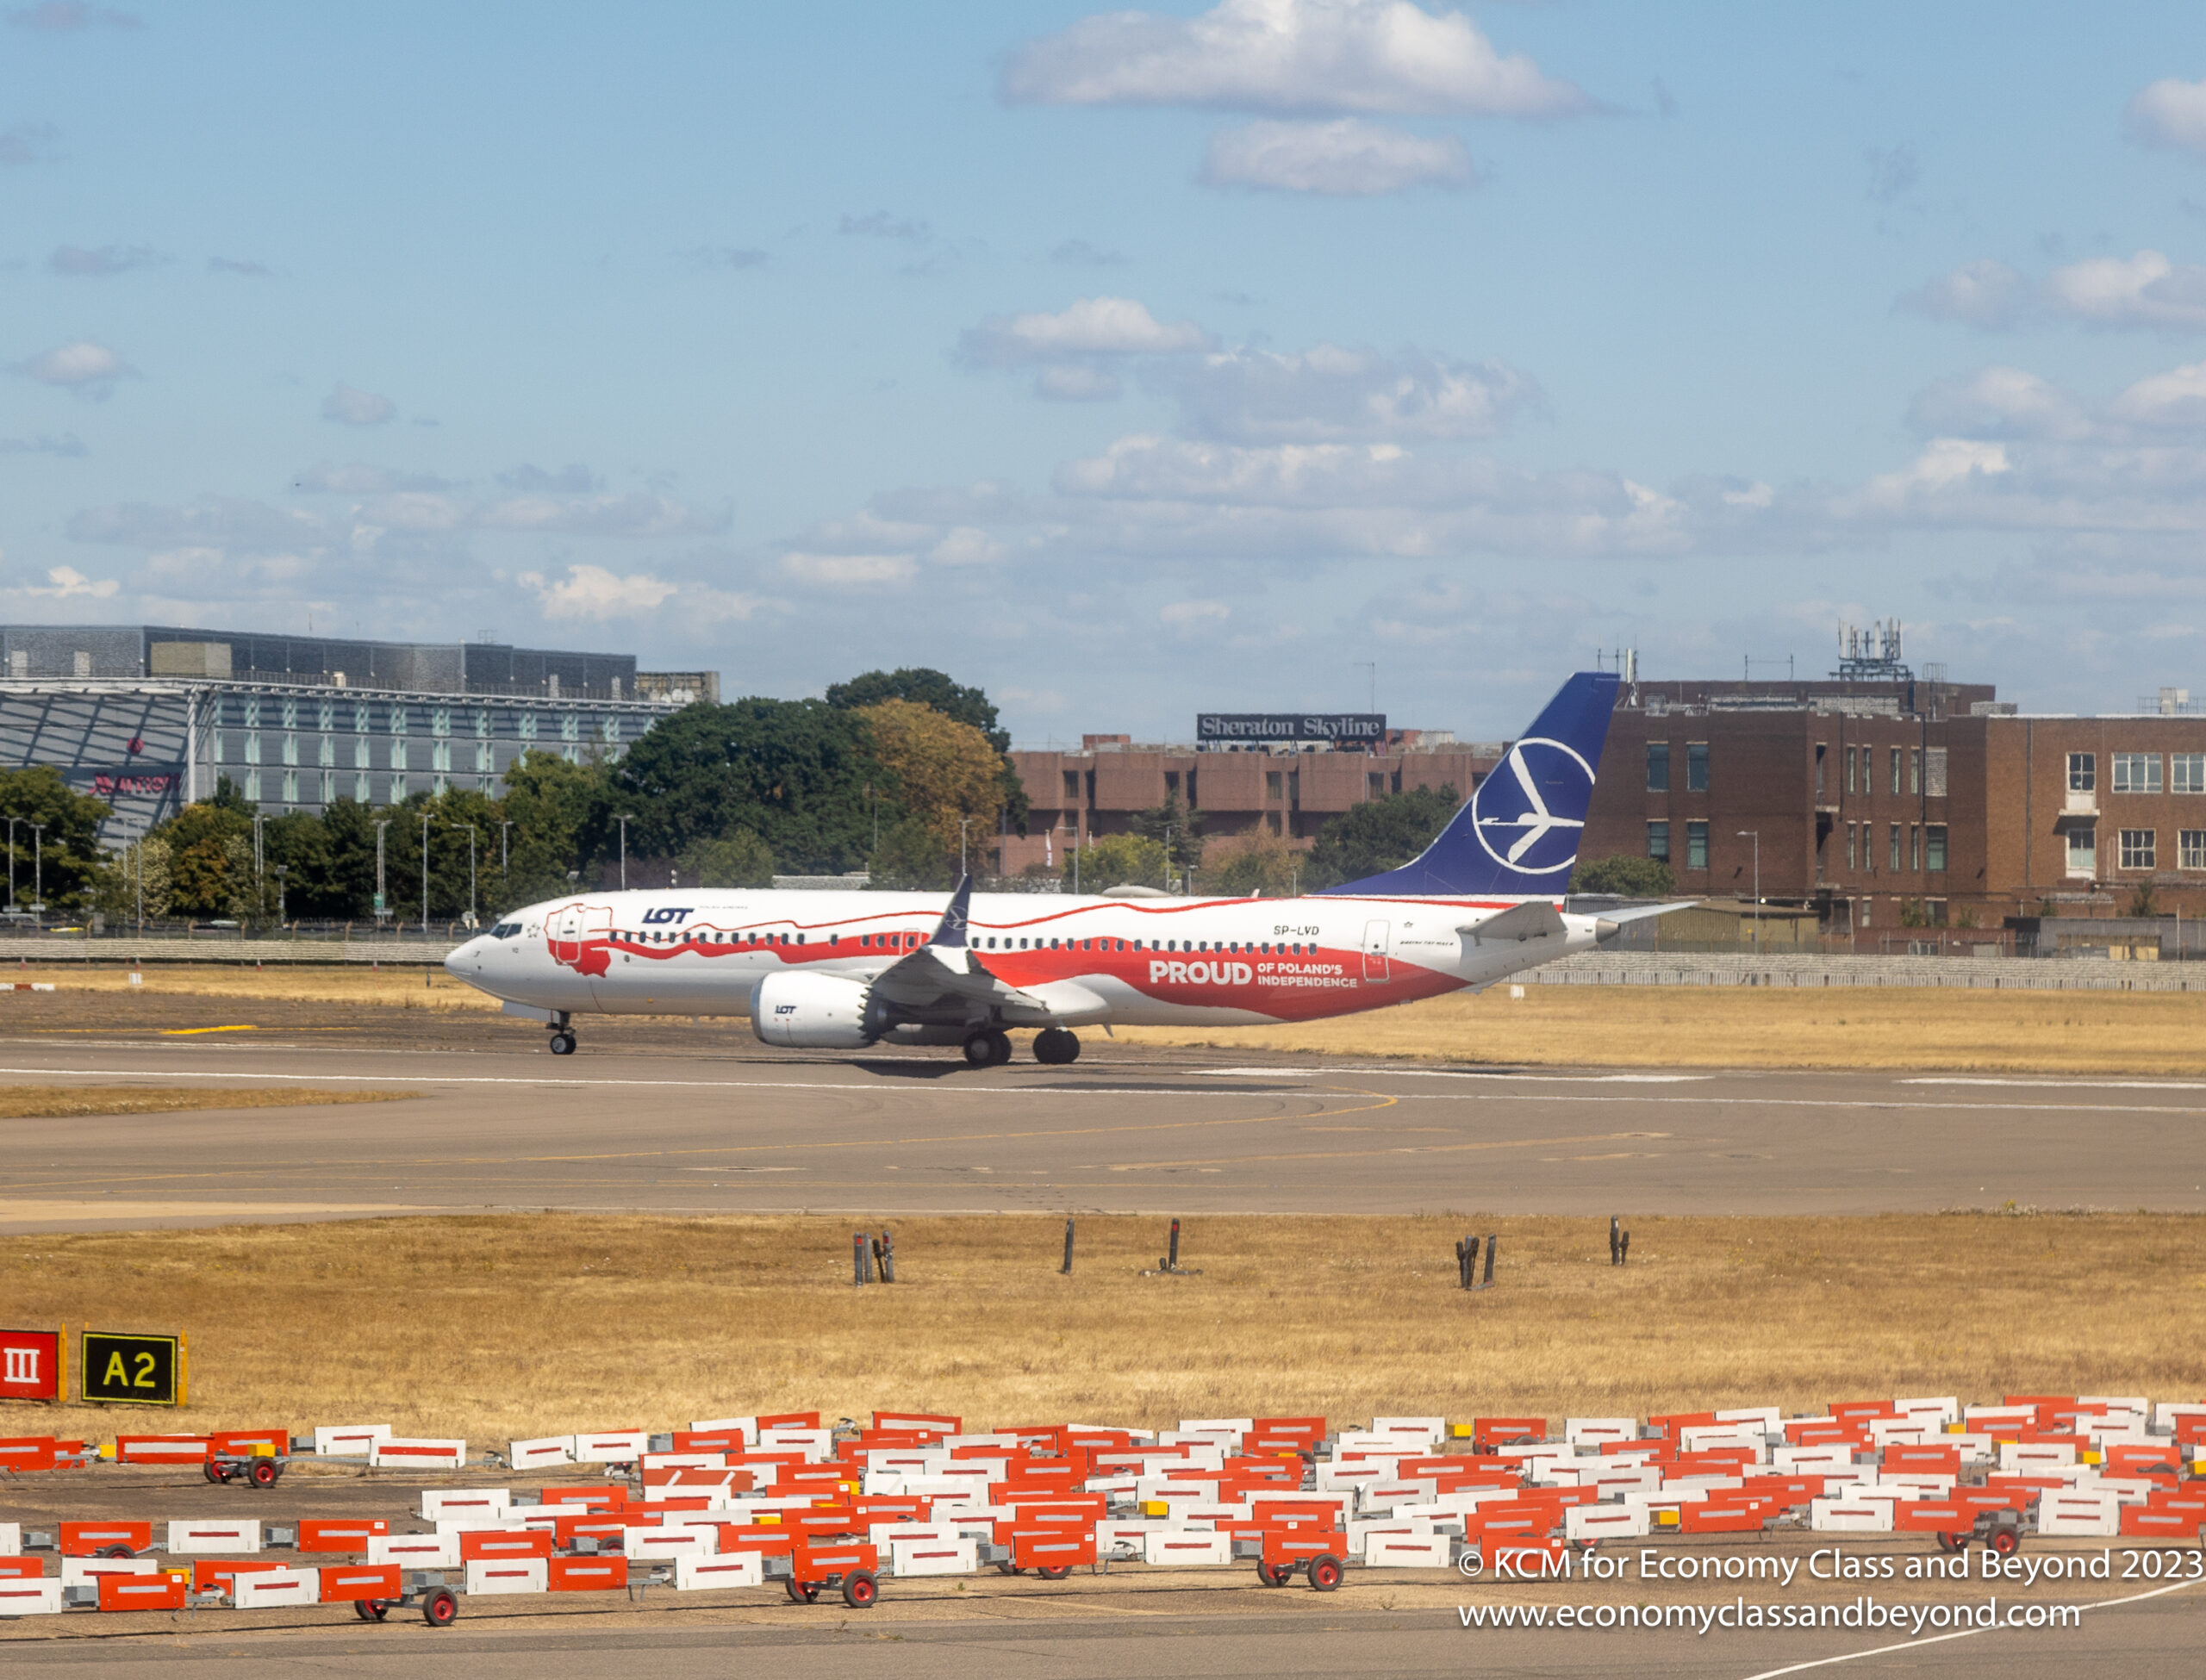 Sztuka samolotowa – Boeing 737-8 Polskich Linii Lotniczych LOT przygotowuje się do odlotu z lotniska Heathrow